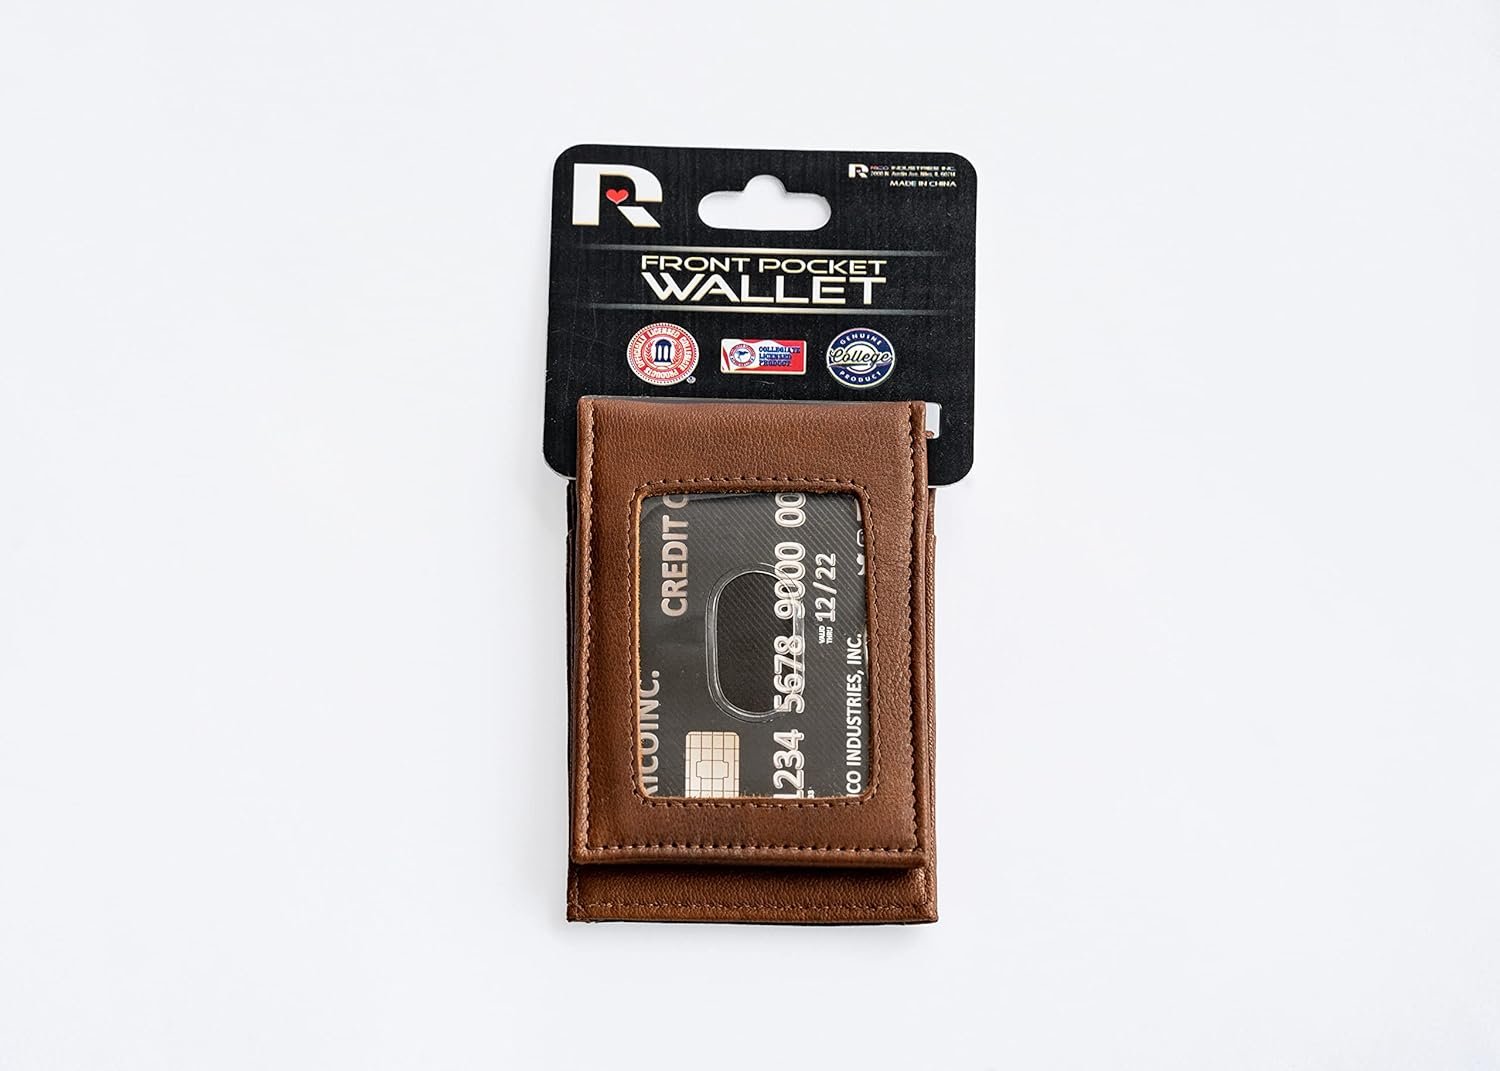 San Jose Sharks Premium Brown Leather Wallet, Front Pocket Magnetic Money Clip, Laser Engraved, Vegan